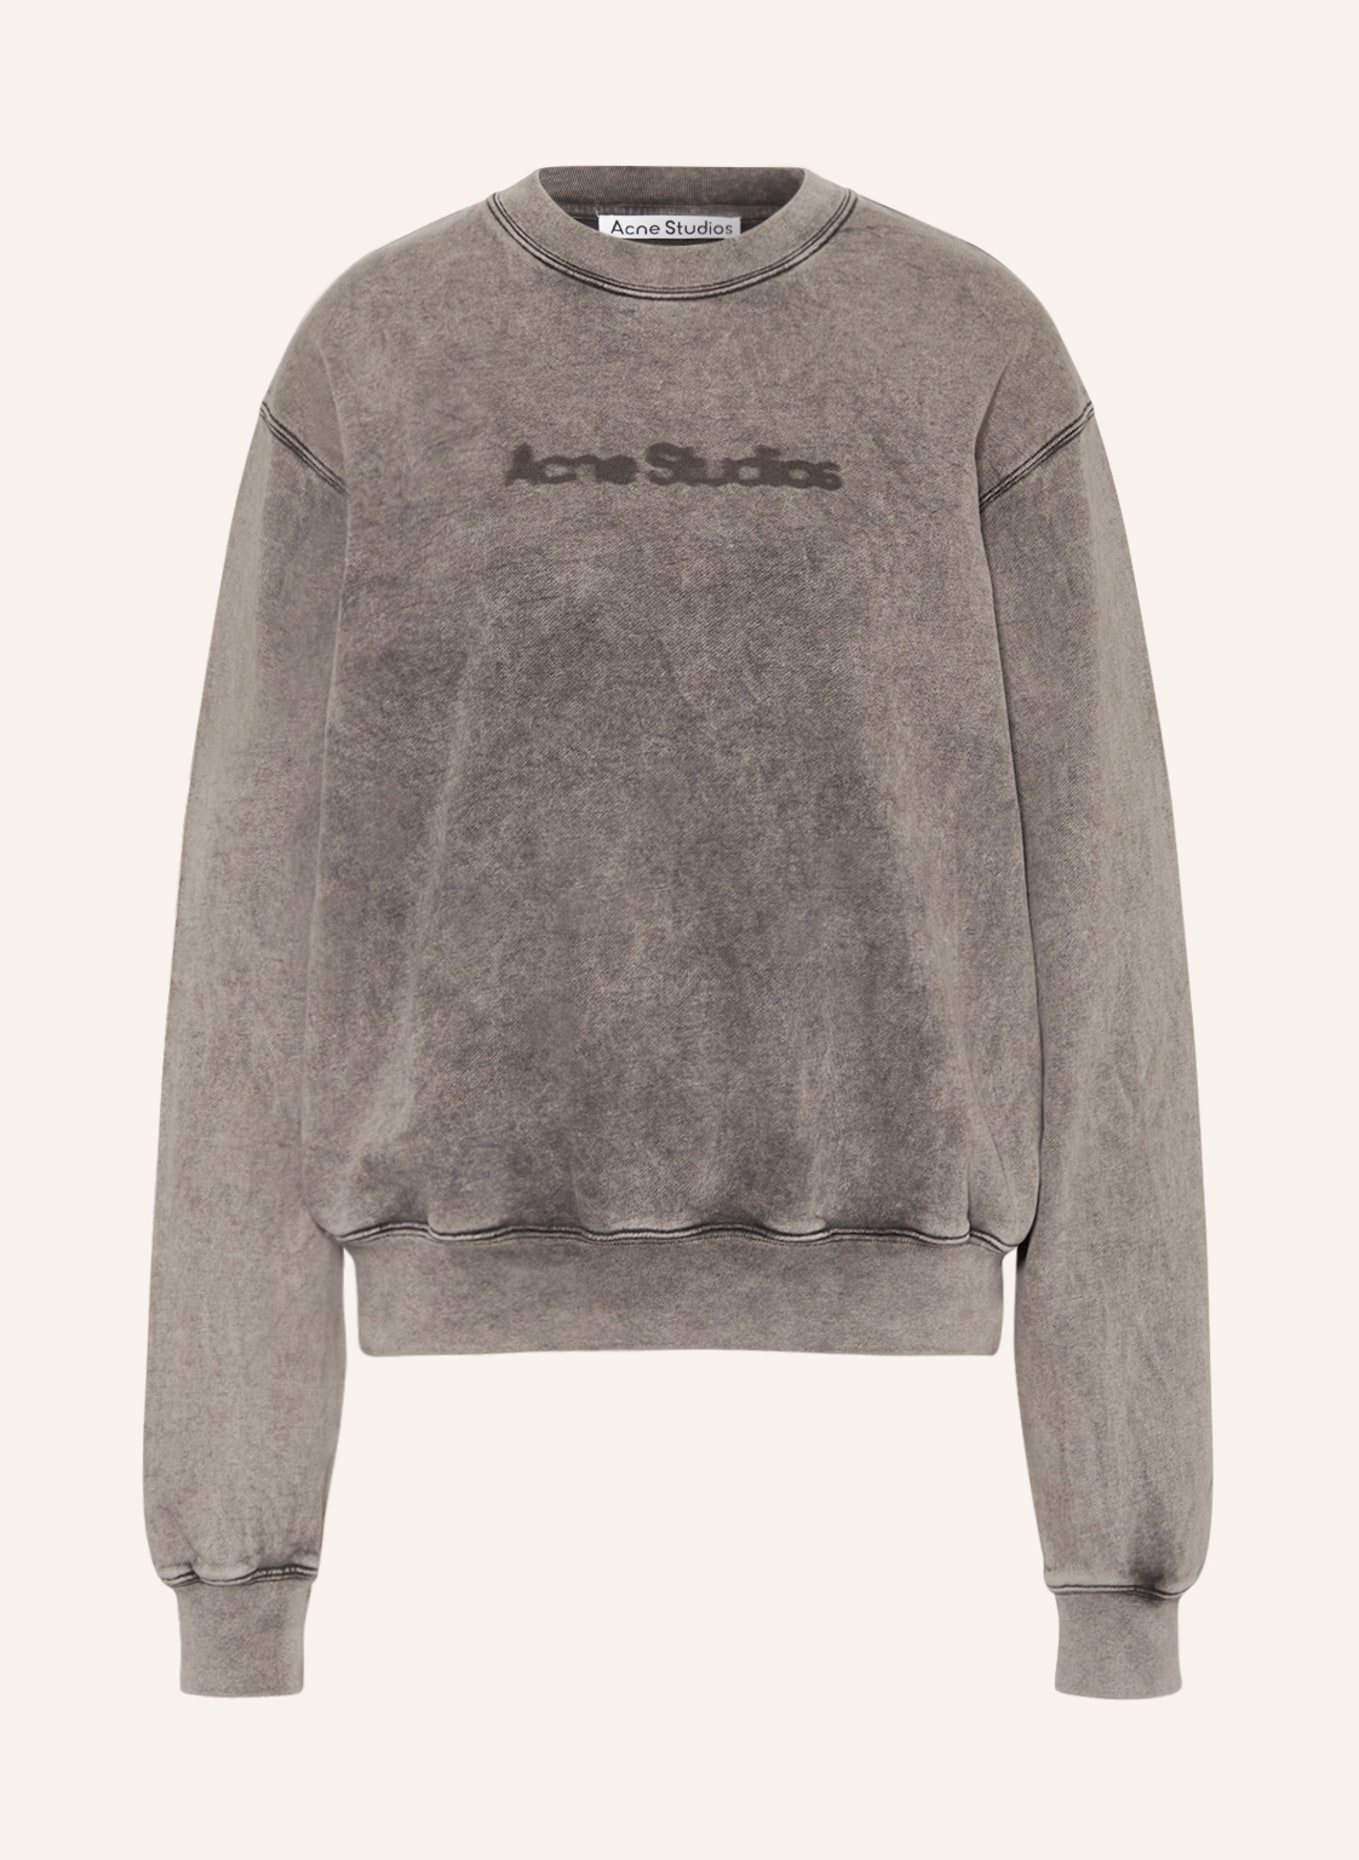 Acne Studios Sweatshirt, Color: GRAY (Image 1)